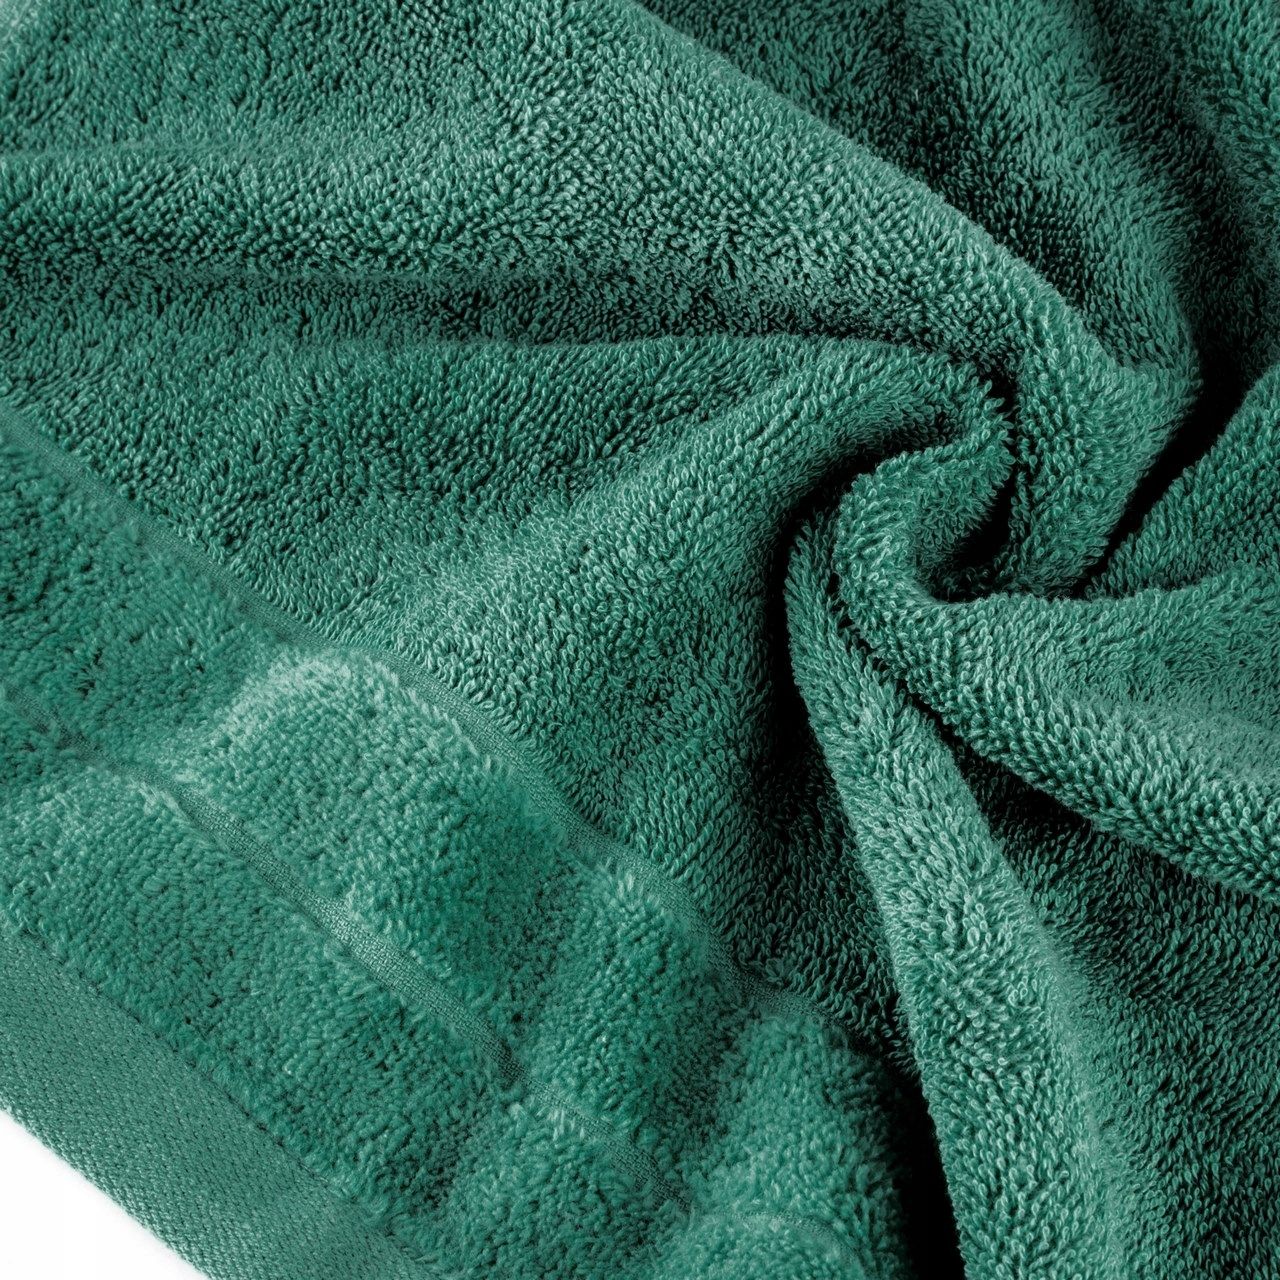 Ręcznik Damla 70x140 zielony ciemny 500g/m2